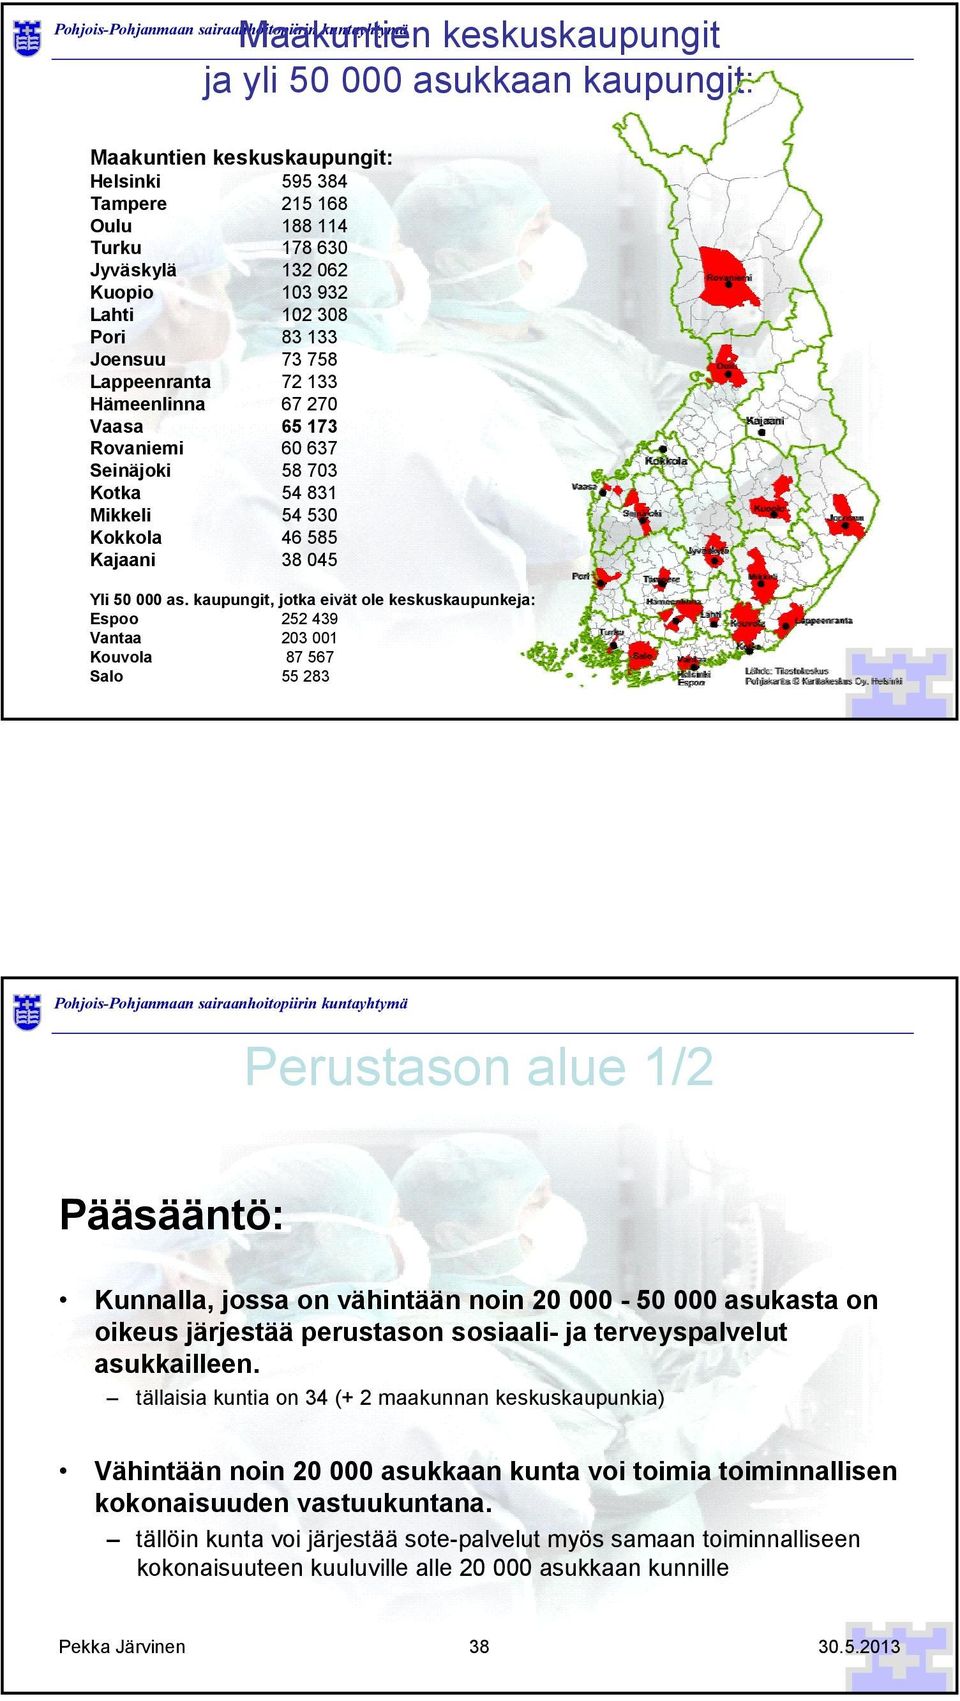 kaupungit, jotka eivät ole keskuskaupunkeja: Espoo 252 439 Vantaa 203 001 Kouvola 87 567 Salo 55 283.